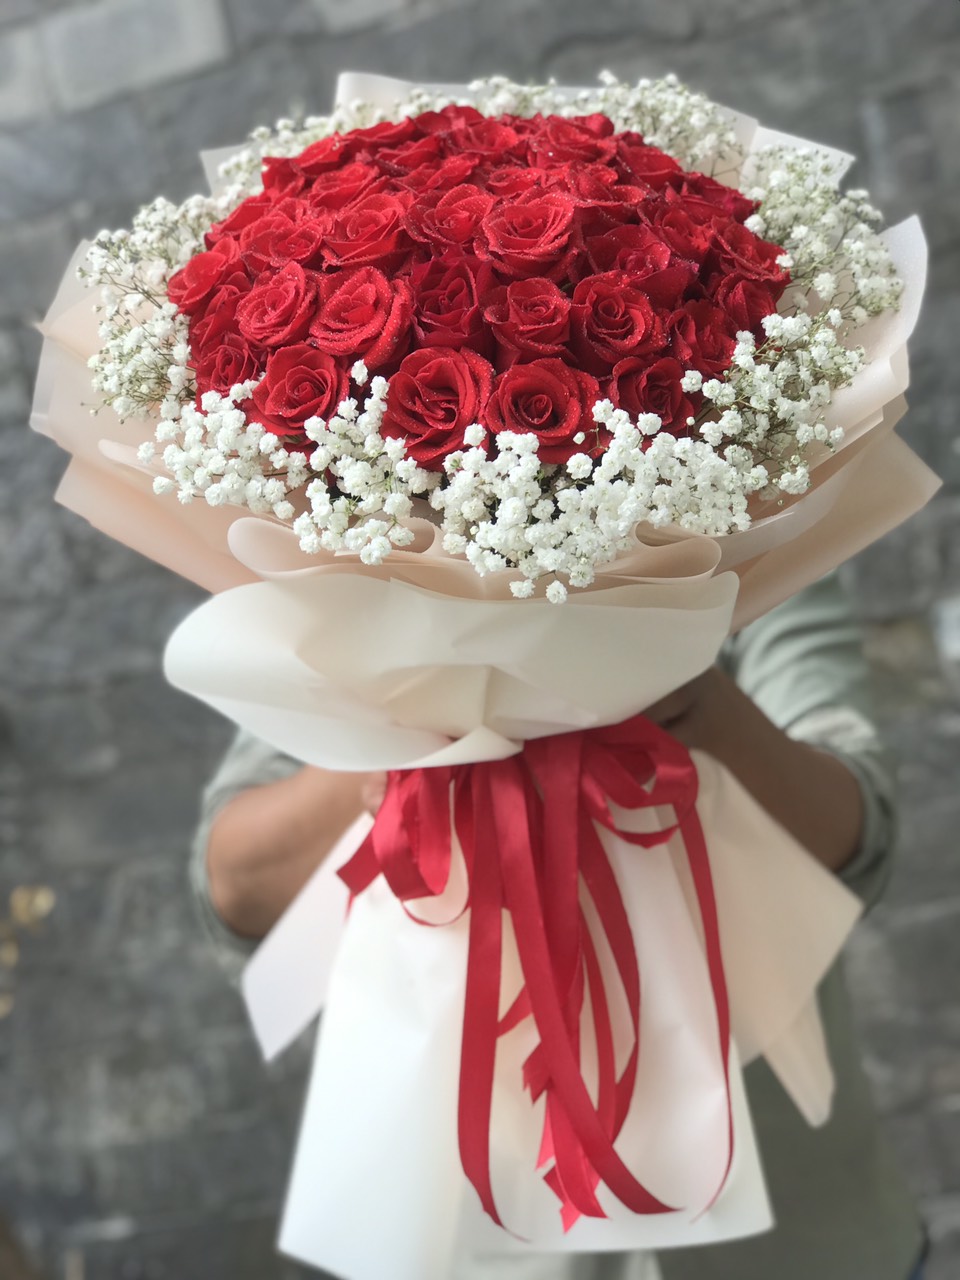 Hoa hồng tặng sinh nhật vợ chồng